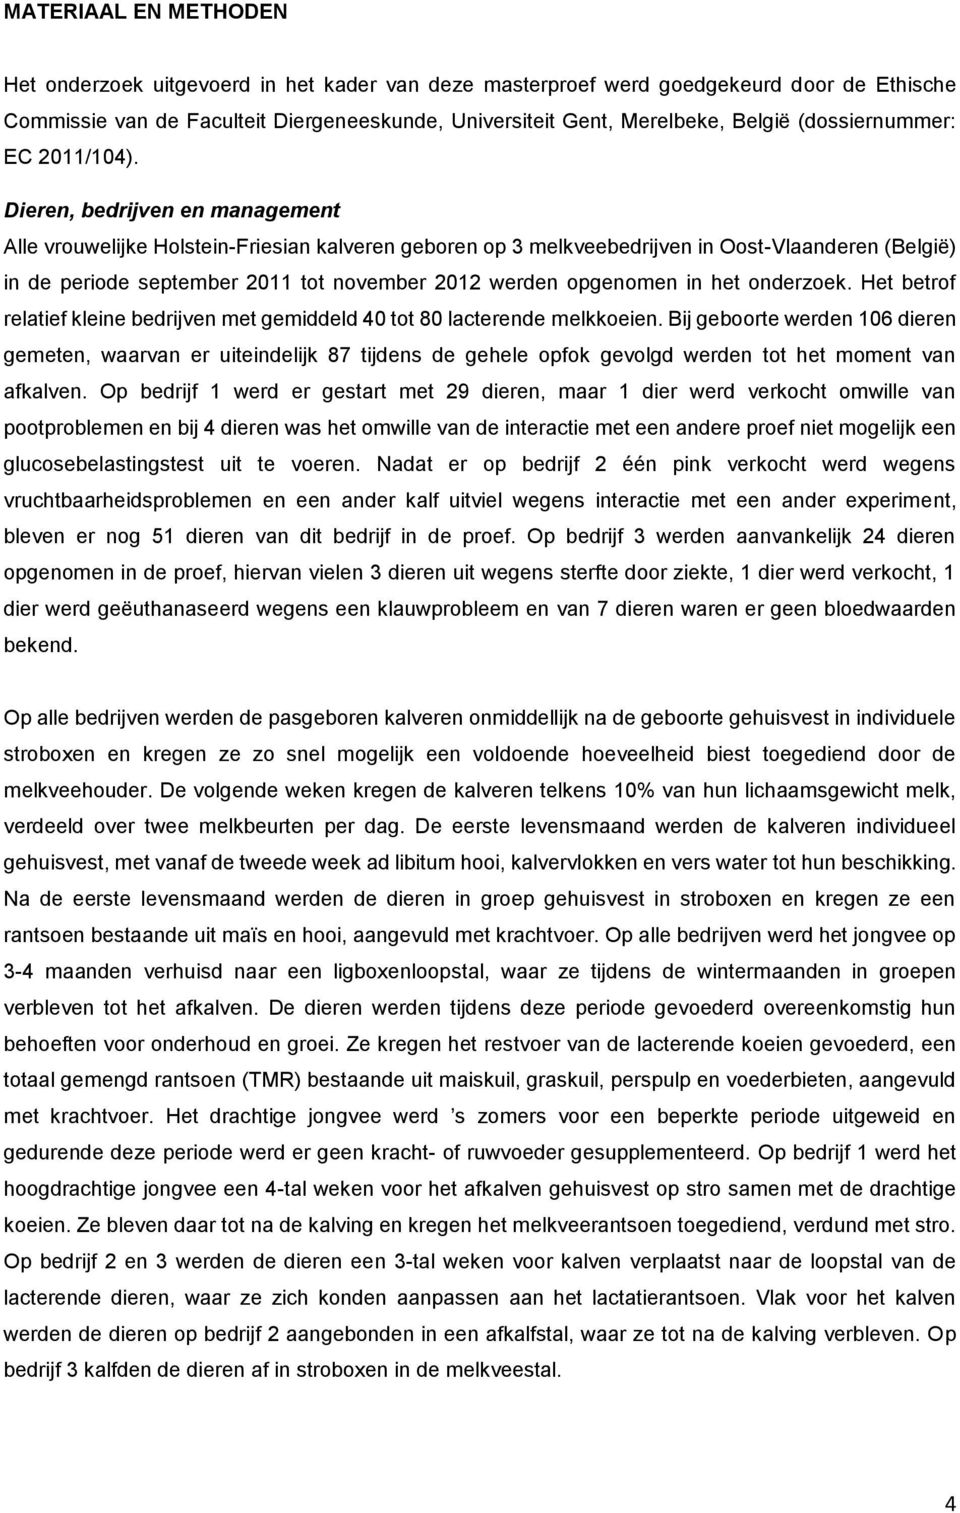 Dieren, bedrijven en management Alle vrouwelijke Holstein-Friesian kalveren geboren op 3 melkveebedrijven in Oost-Vlaanderen (België) in de periode september 2011 tot november 2012 werden opgenomen